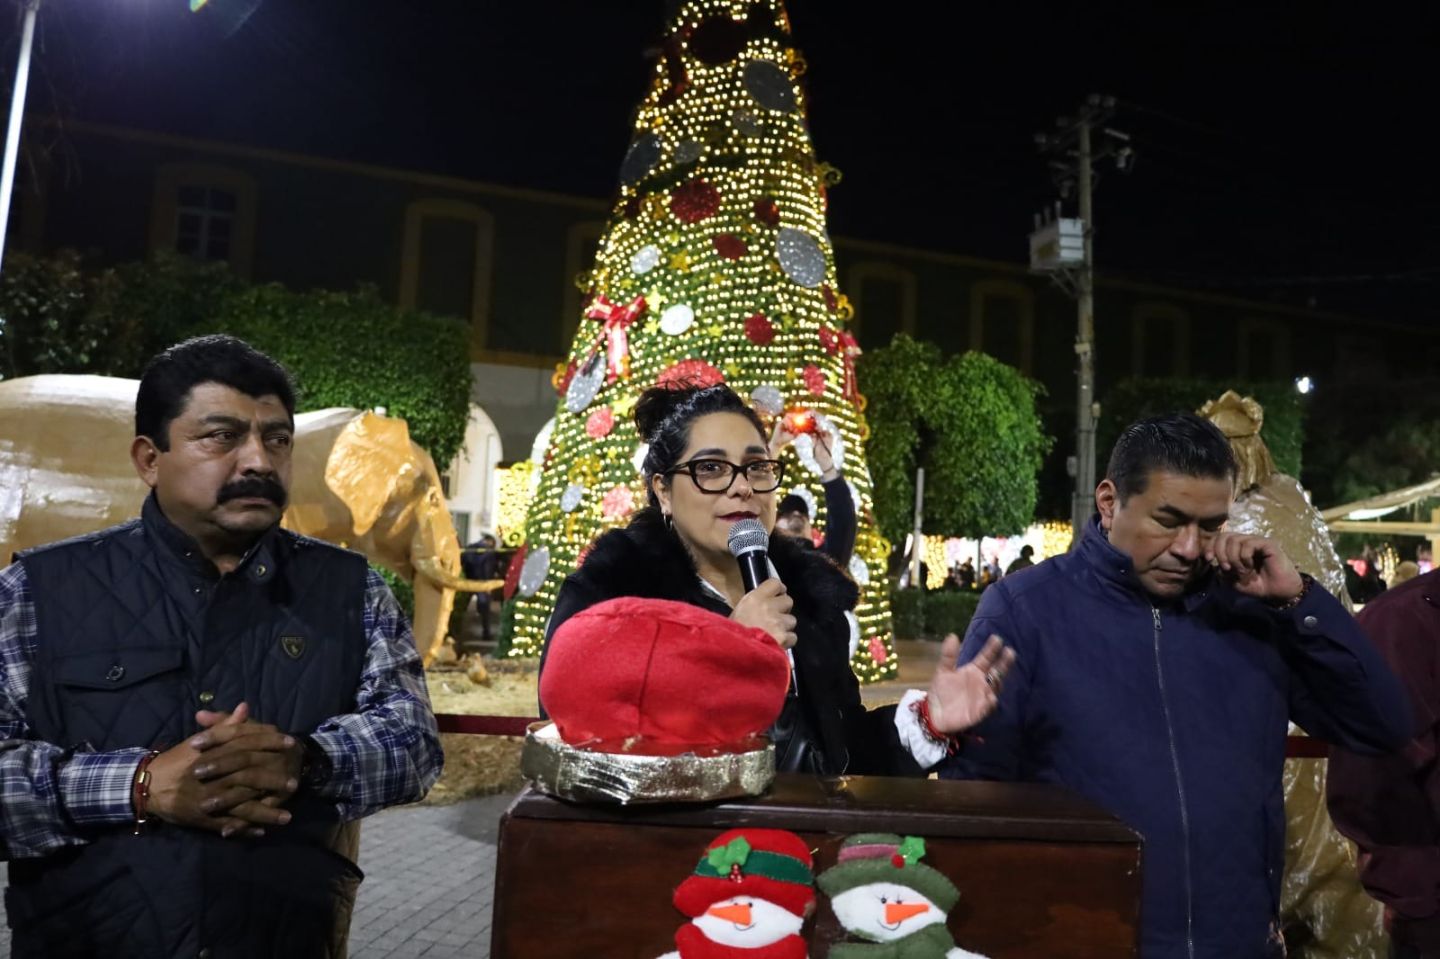 Se Presentó la Gala de Navidad de la
Cantante Filippa Jordano en Texcoco
